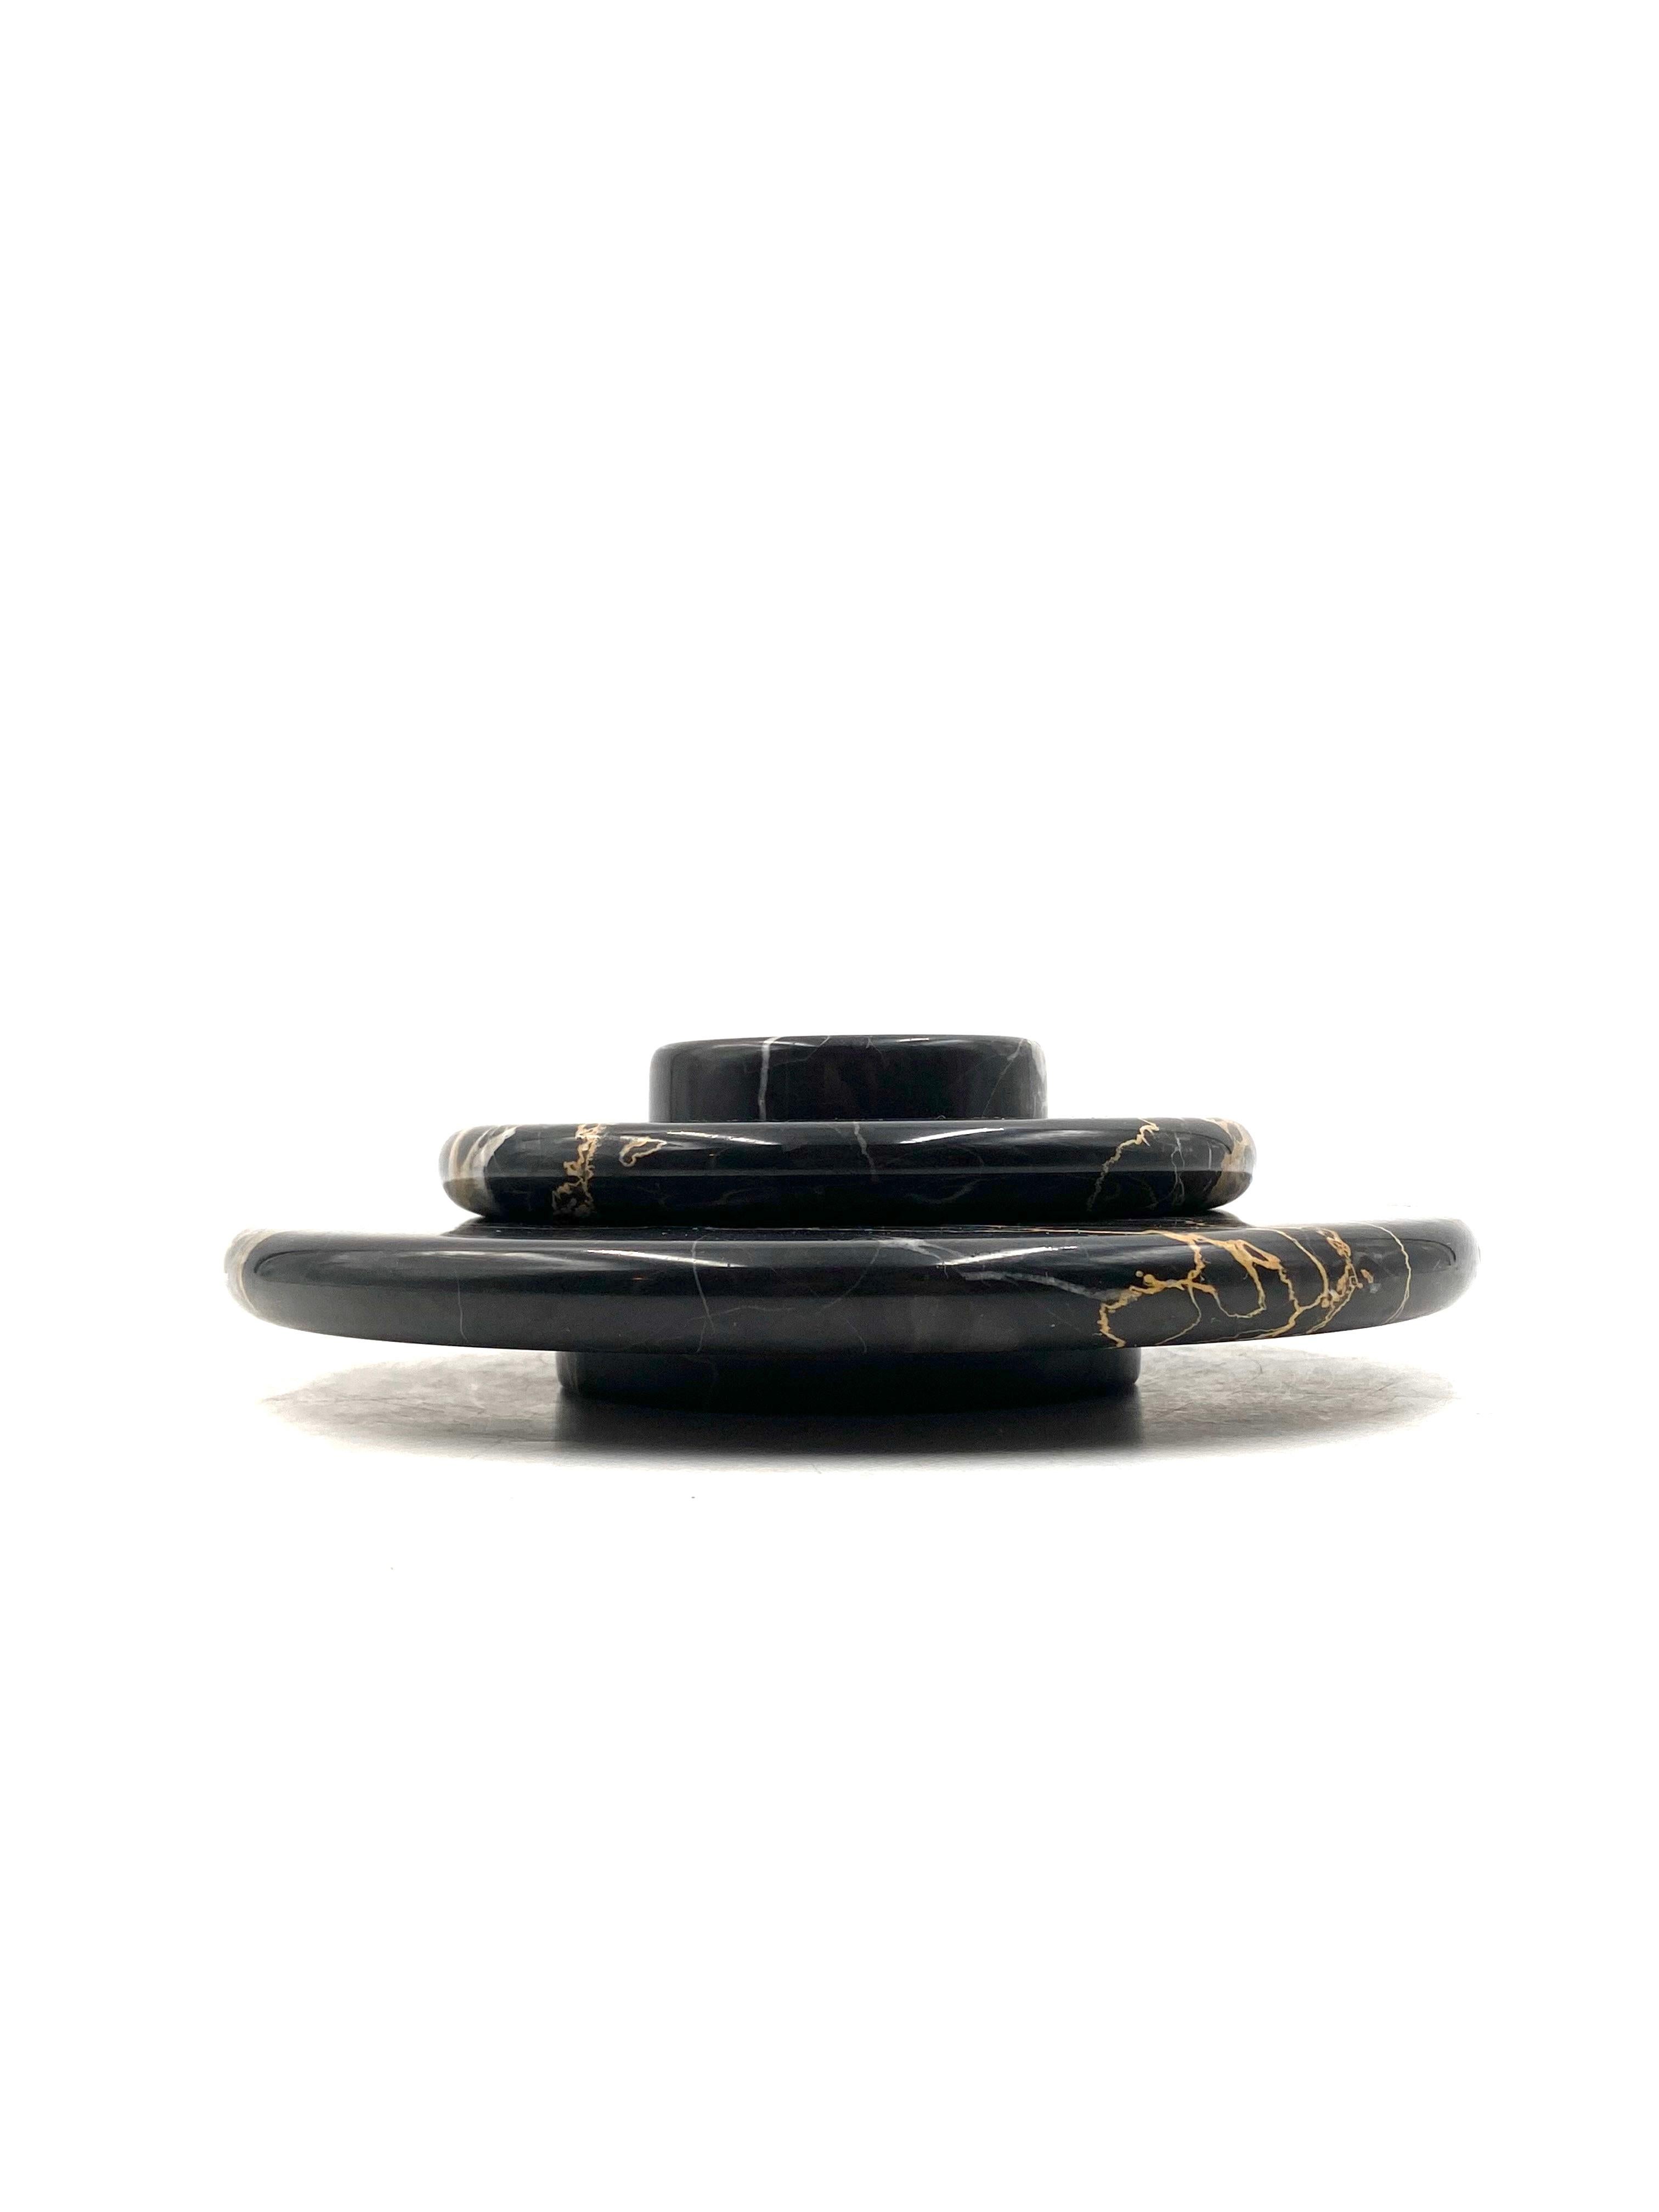 Marbre noir de Belgique Centre de table en marbre noir Portoro / vide poche, Casigliani Italie, années 1970 en vente